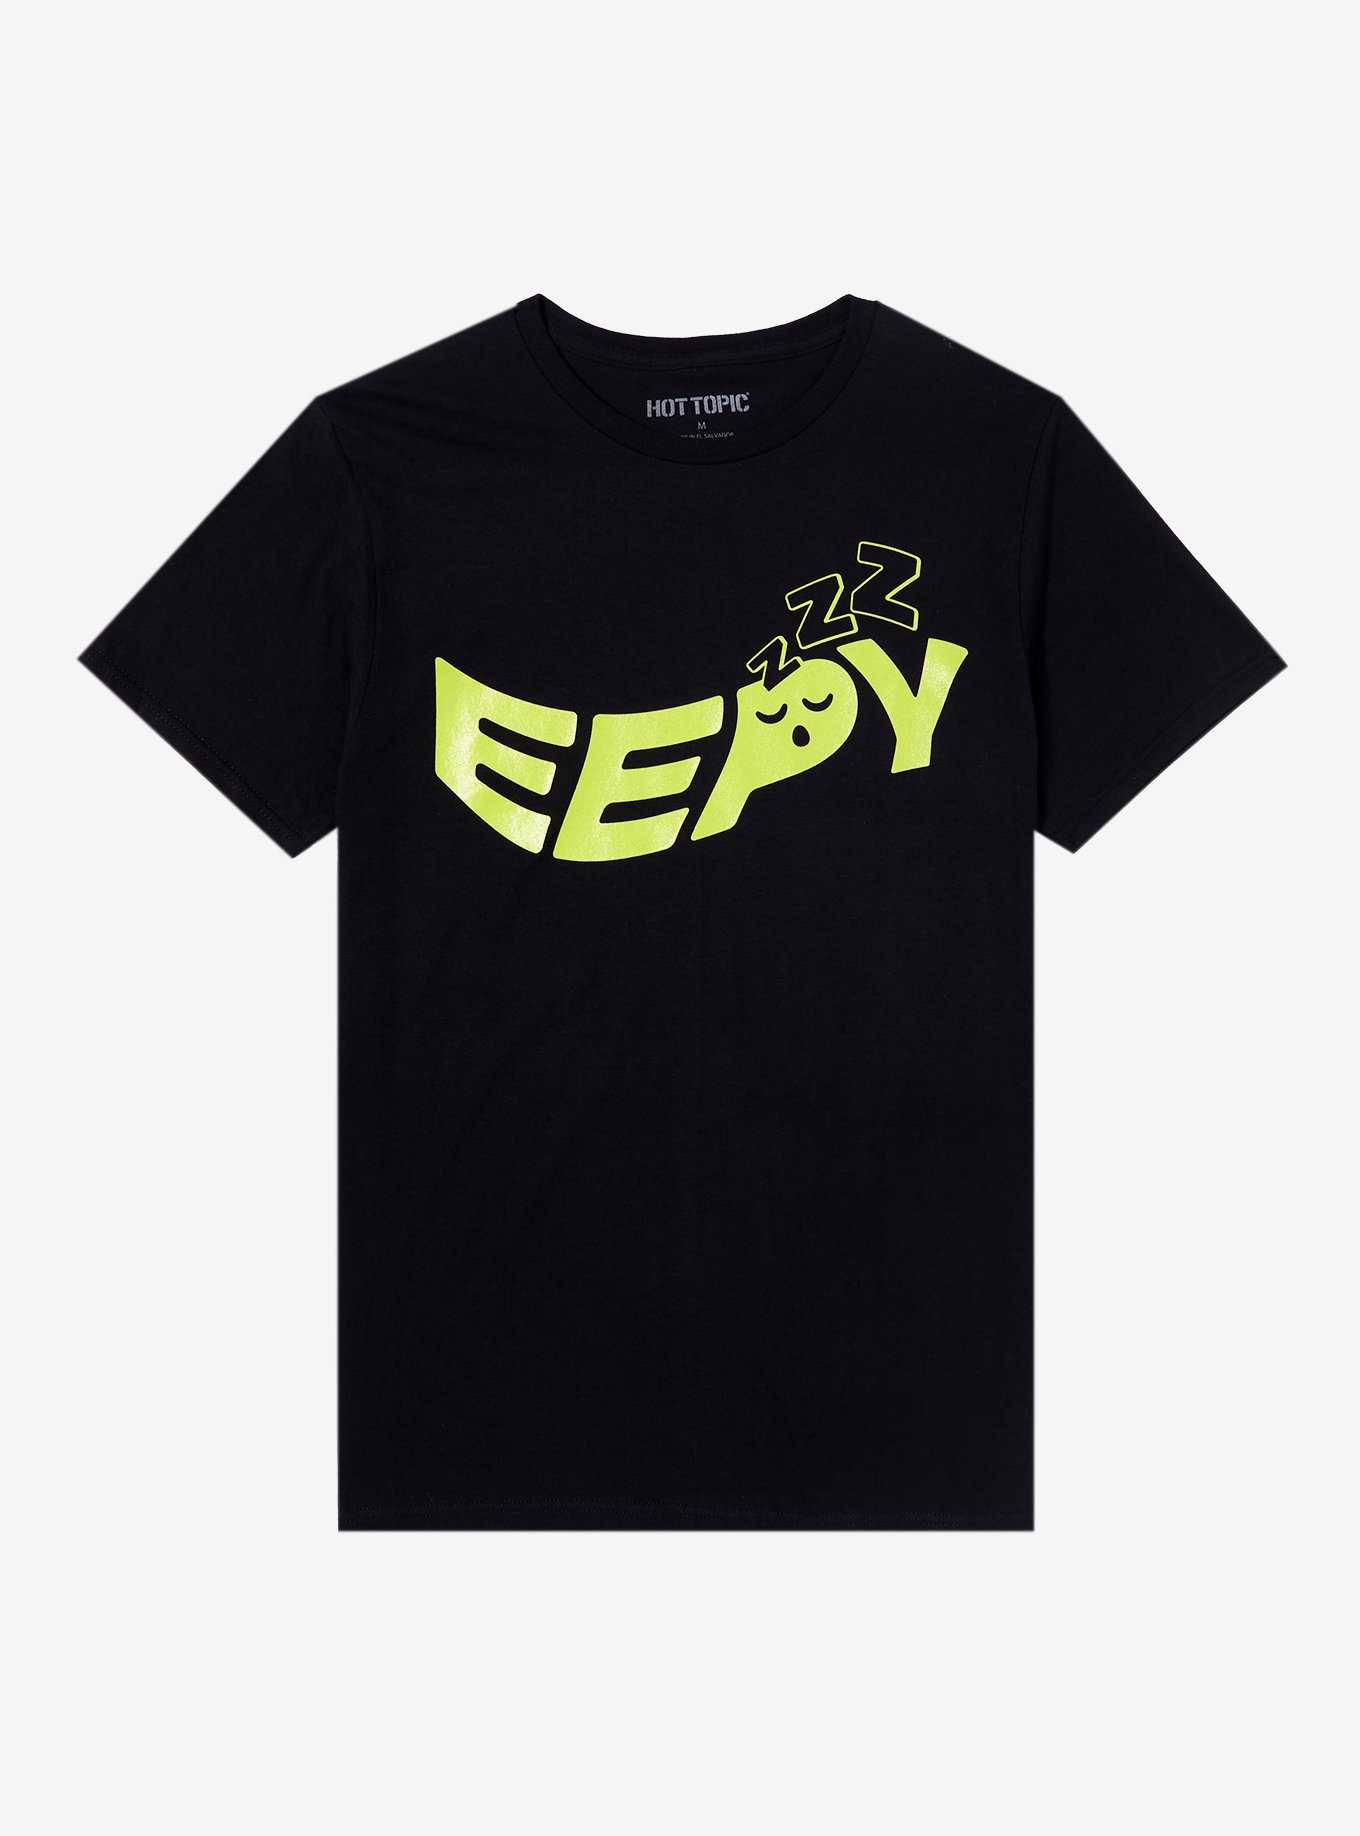 Eepy Glow-In-The-Dark T-Shirt, , hi-res